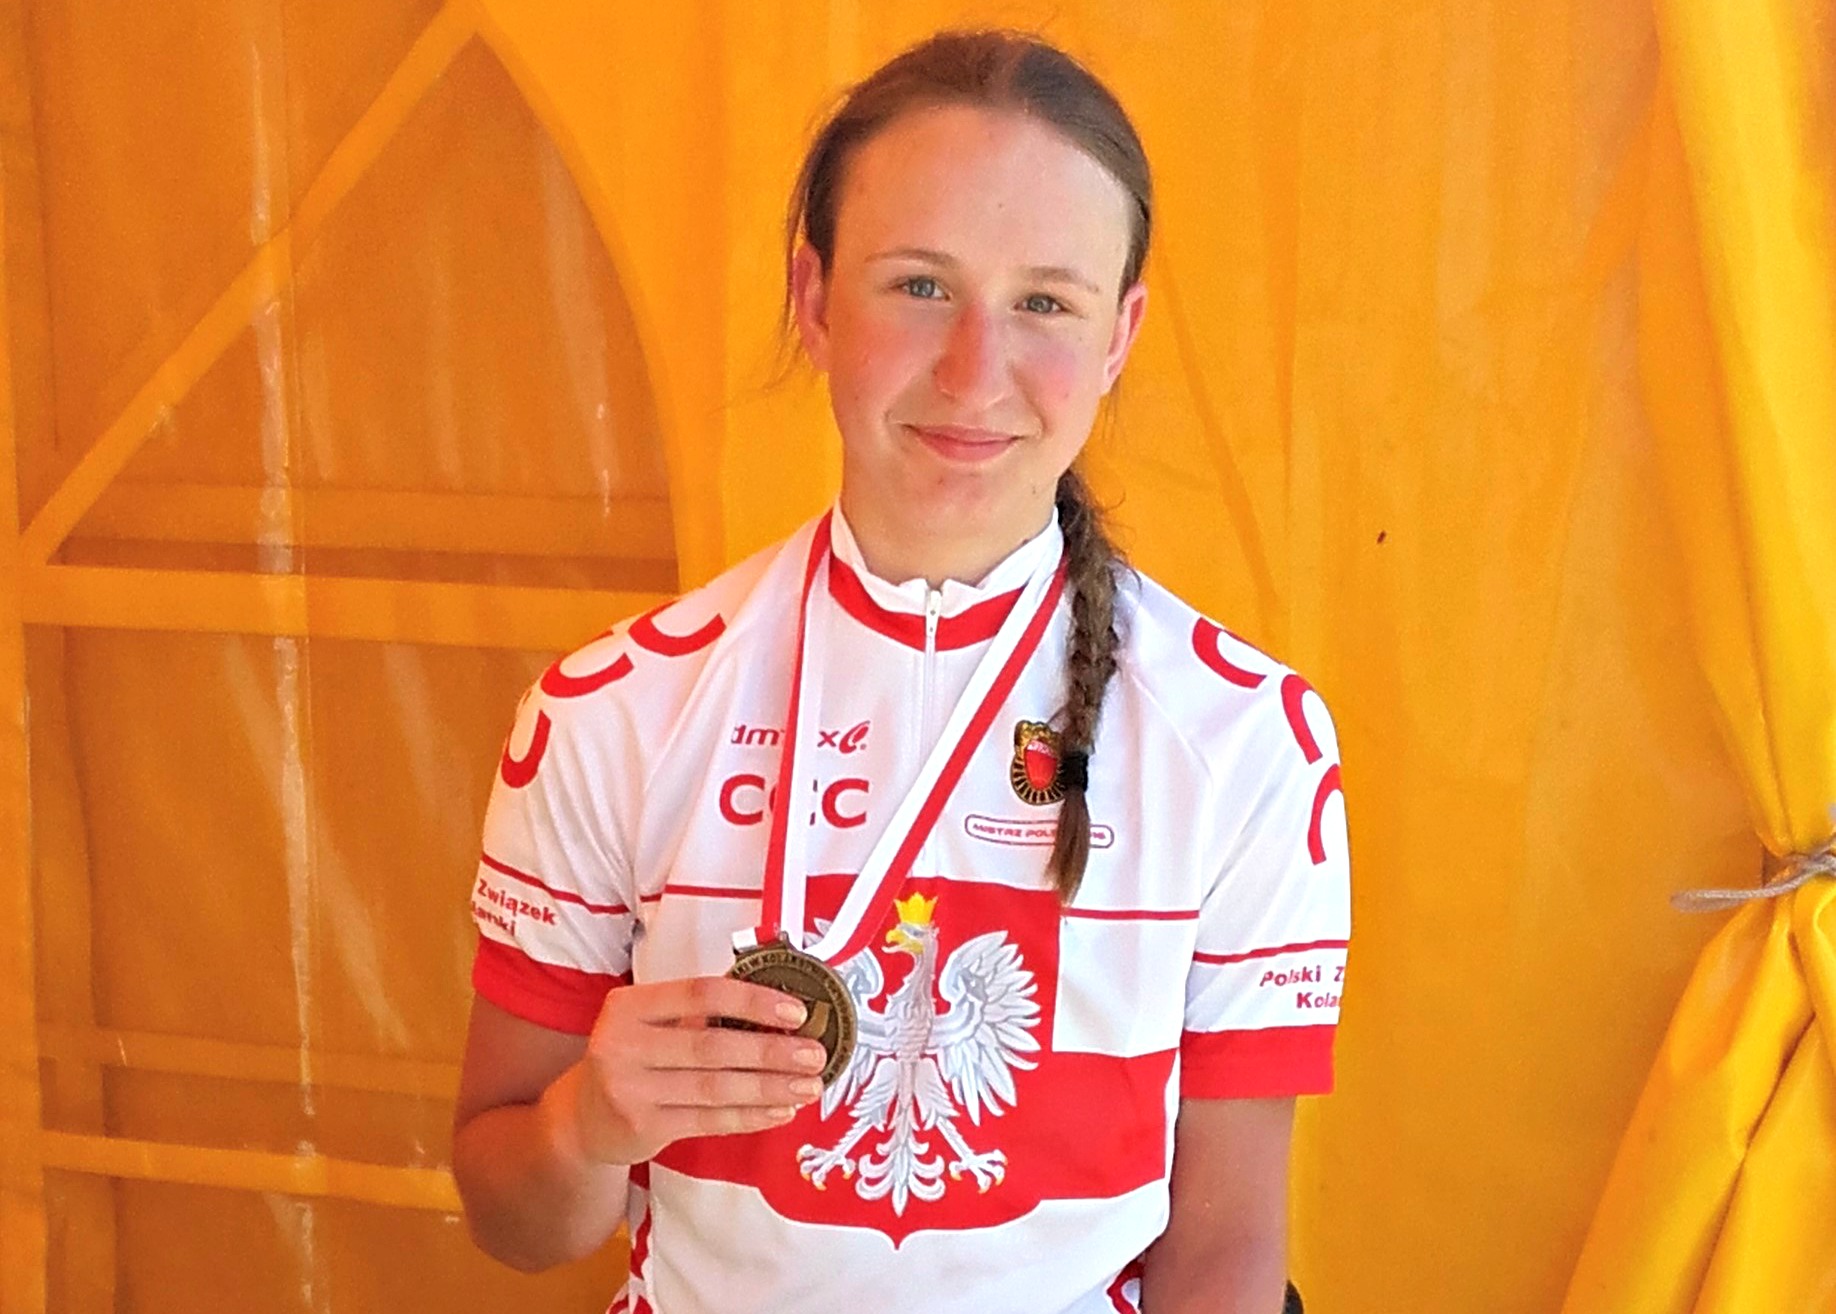 Mistrzostwa Polski 2016: Karolina Perekitko: “widziałam szansę dla siebie”